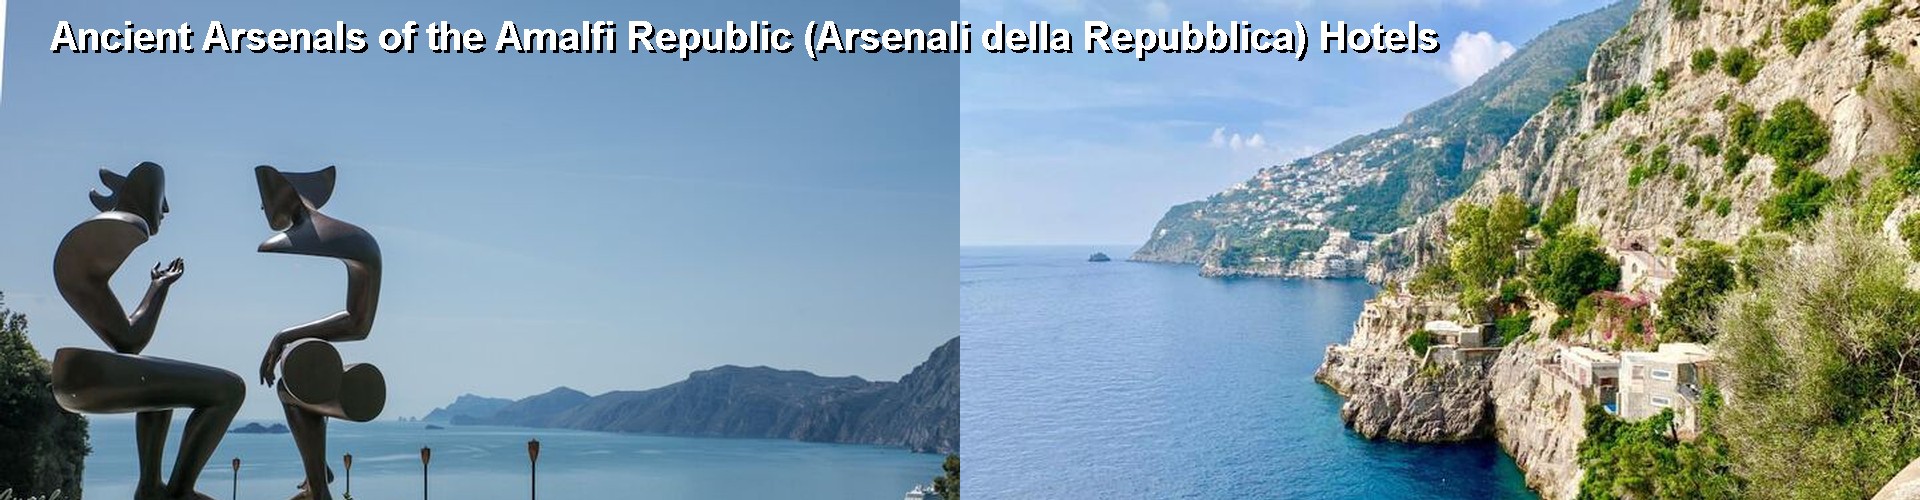 5 Best Hotels near Ancient Arsenals of the Amalfi Republic (Arsenali della Repubblica)